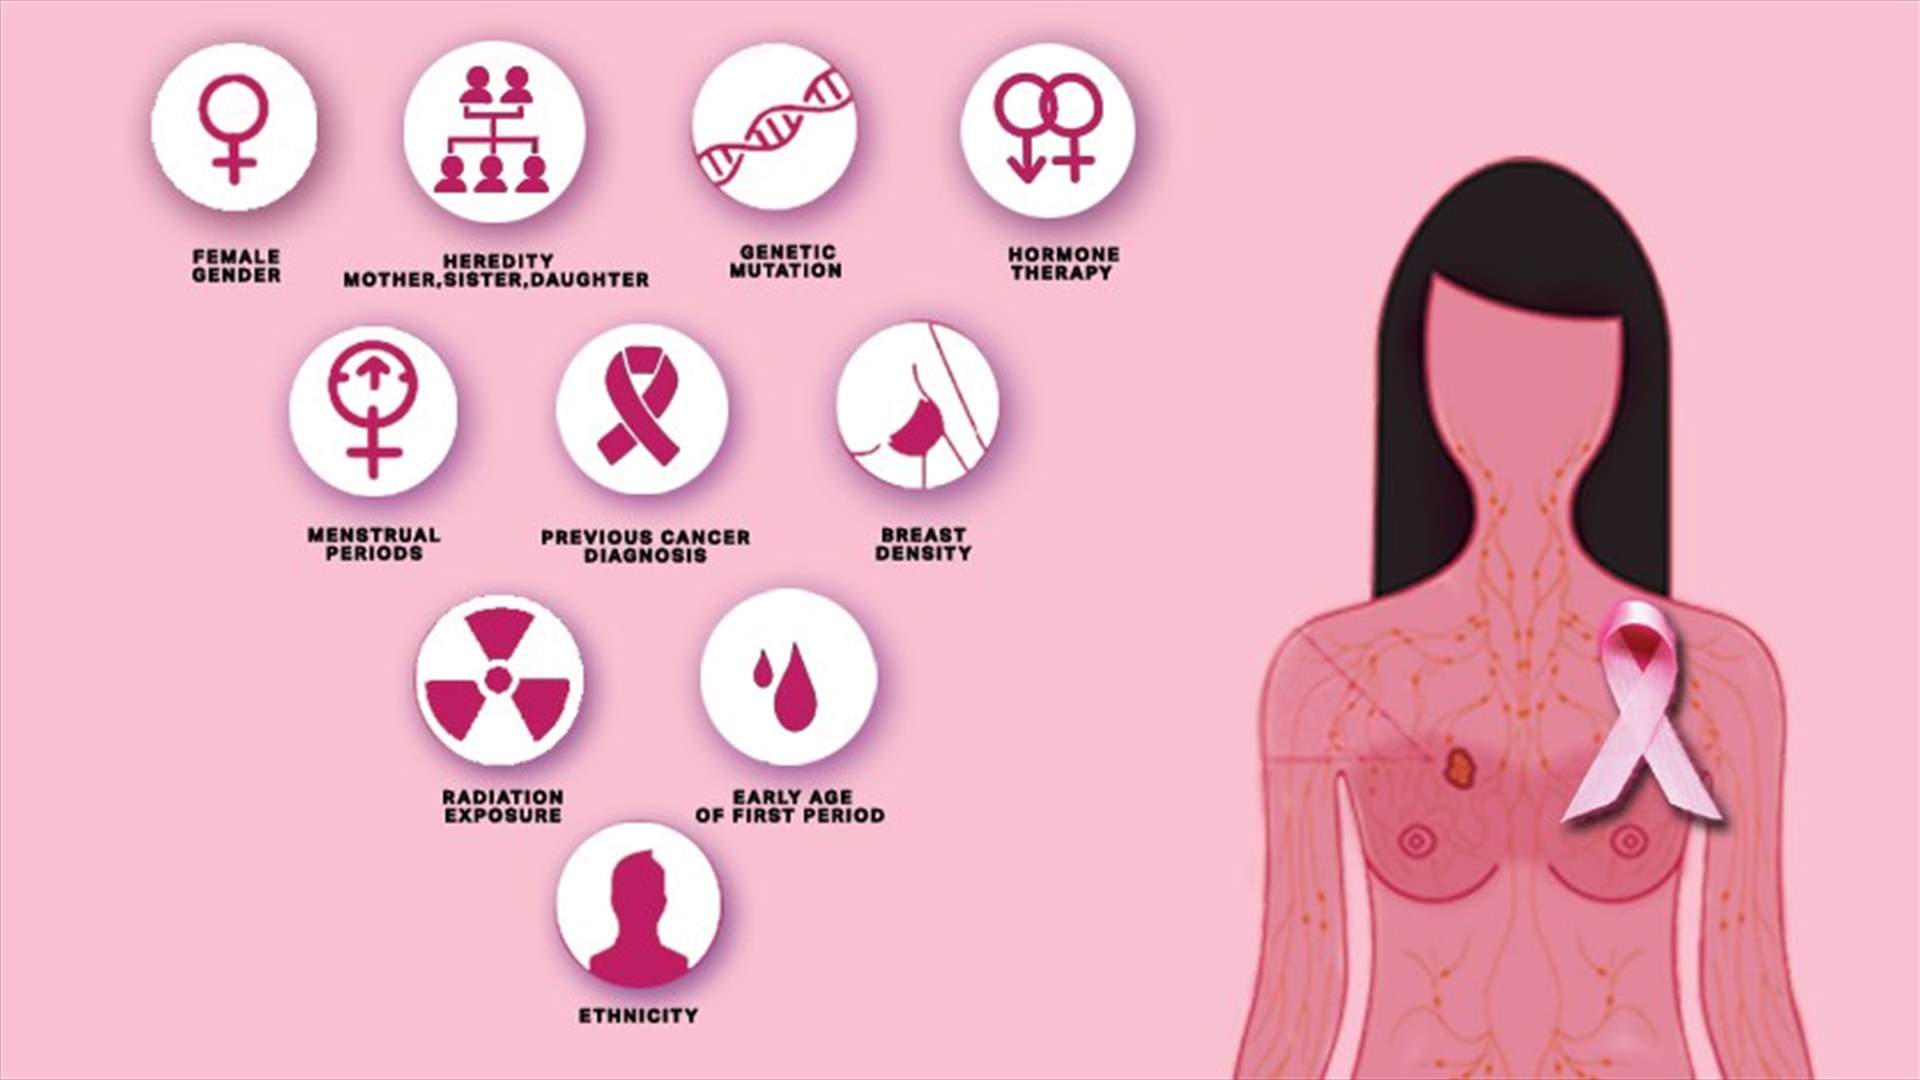 سرطان الثدي... معلومات طبية مهمة يجب أن تعرفوها عن أسبابه وأعراضه وعلاجاته وكيفية الوقاية منه!